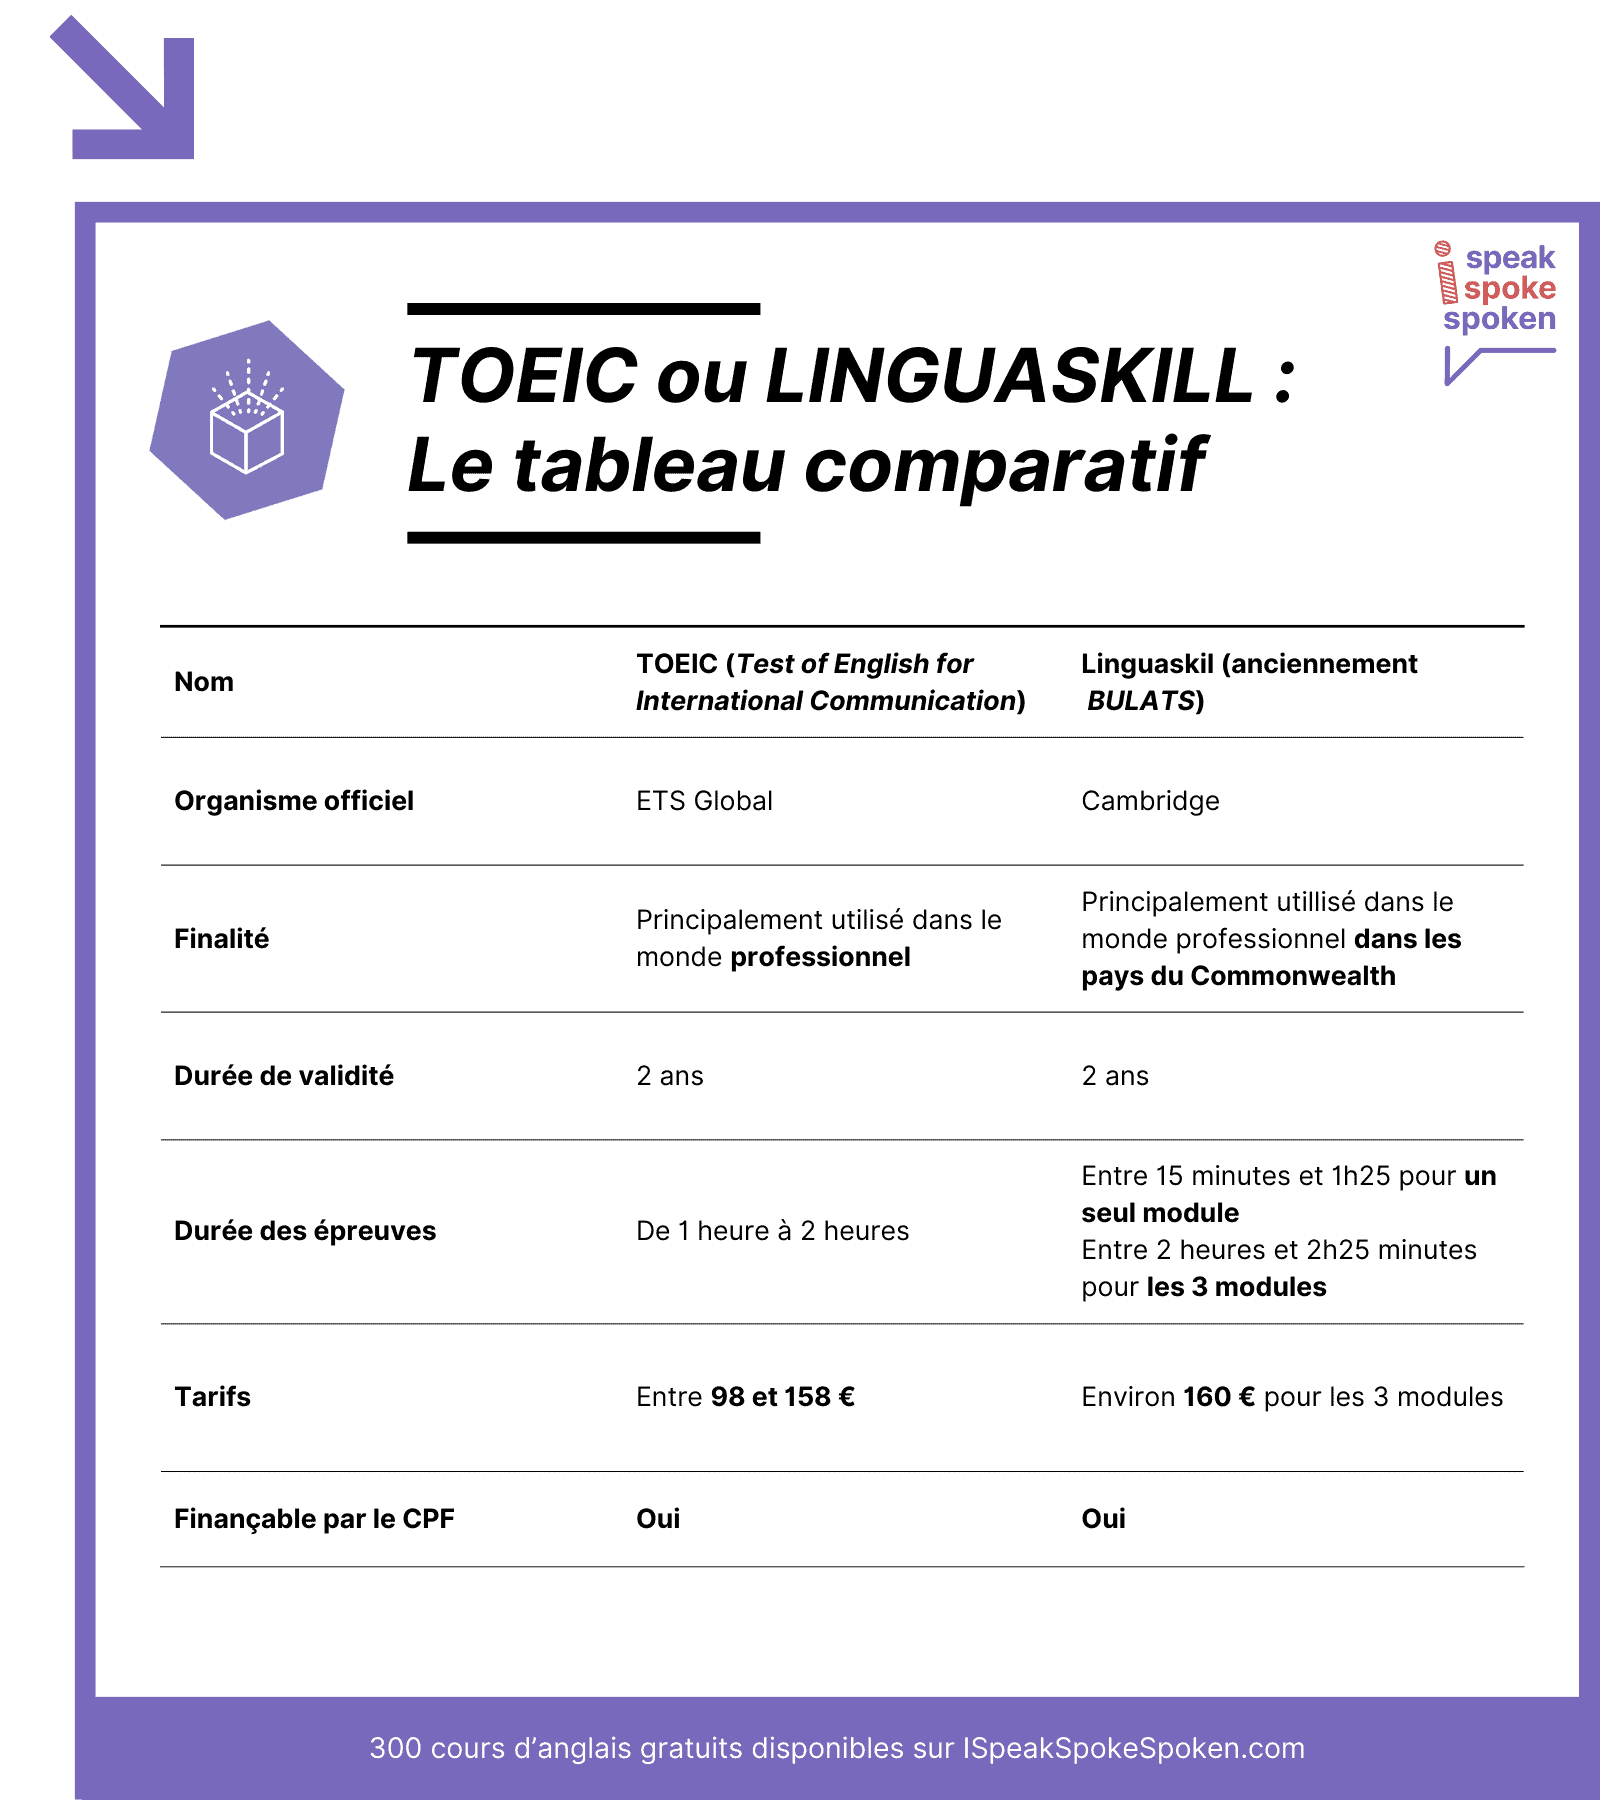 Le tableau comparatif du TOEIC et des tests Linguaskill